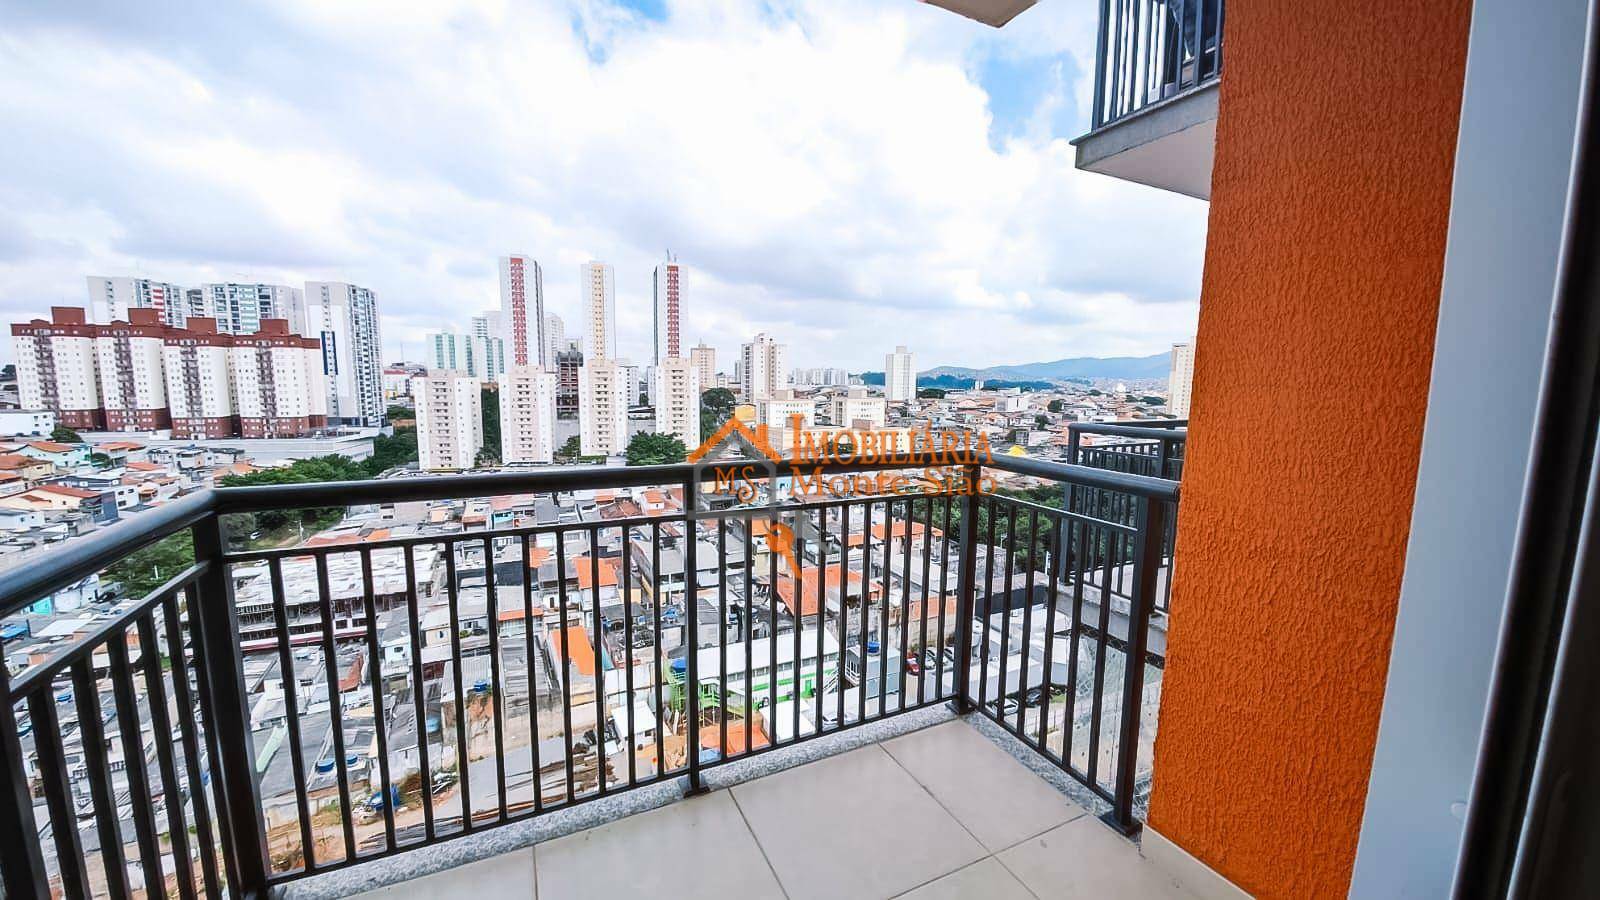 Apartamento com 2 dormitórios à venda, 58 m² por R$ 399.900,00 - Picanco - Guarulhos/SP